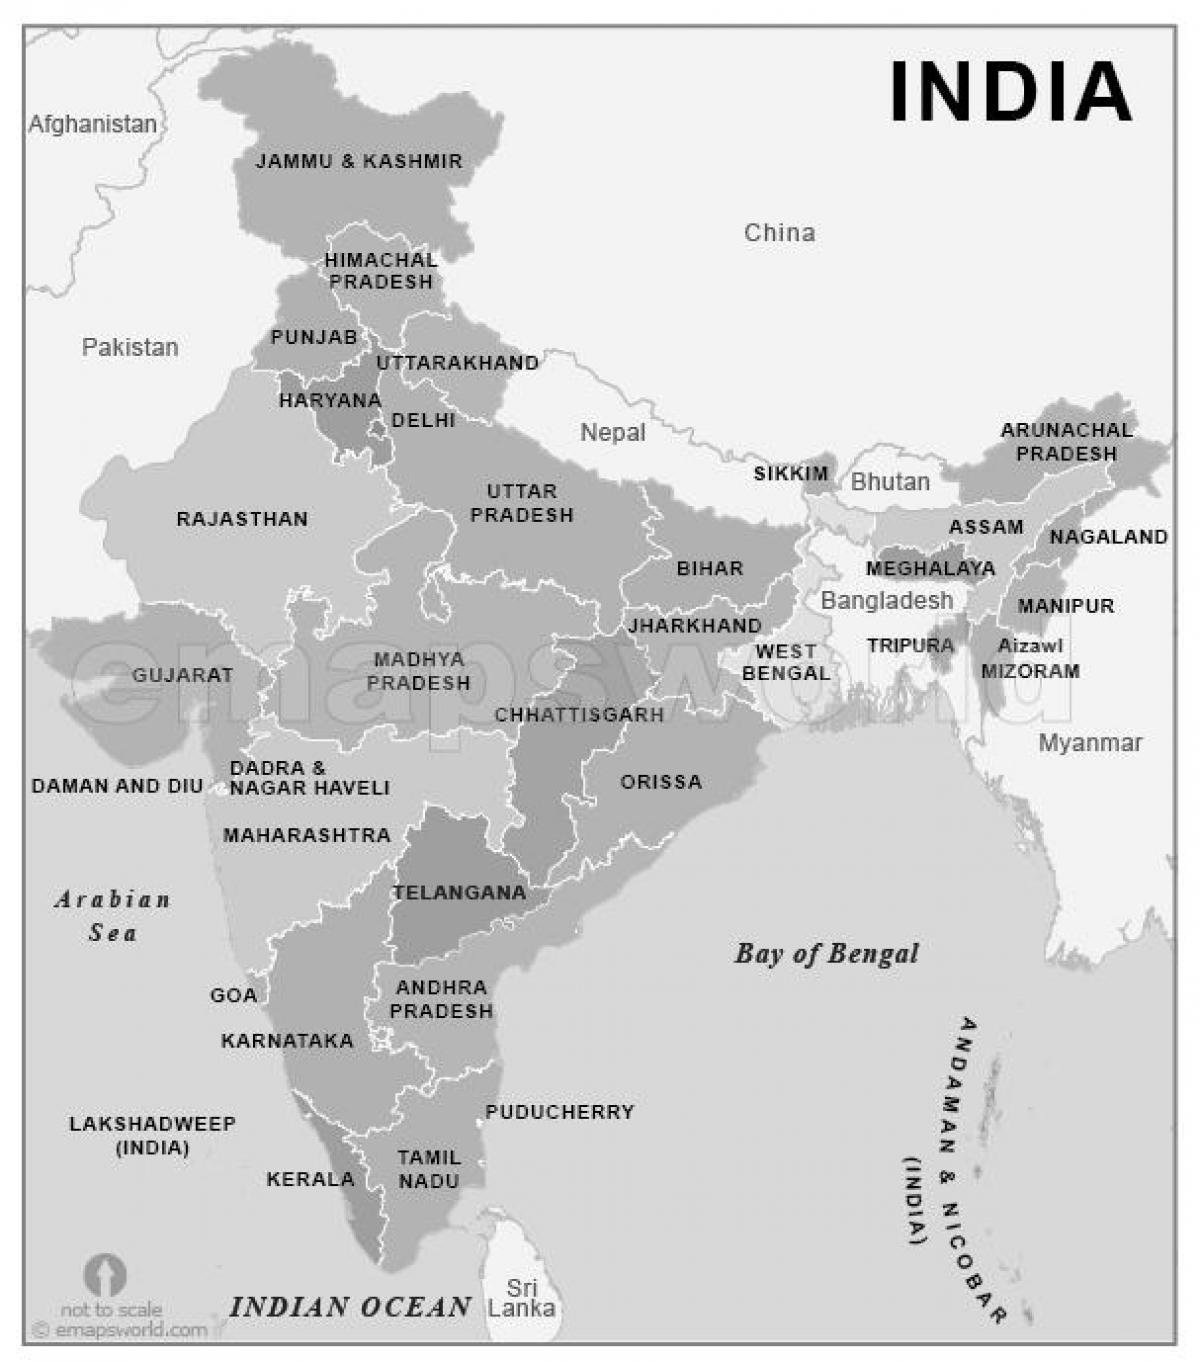 noir et blanc, carte de l'Inde